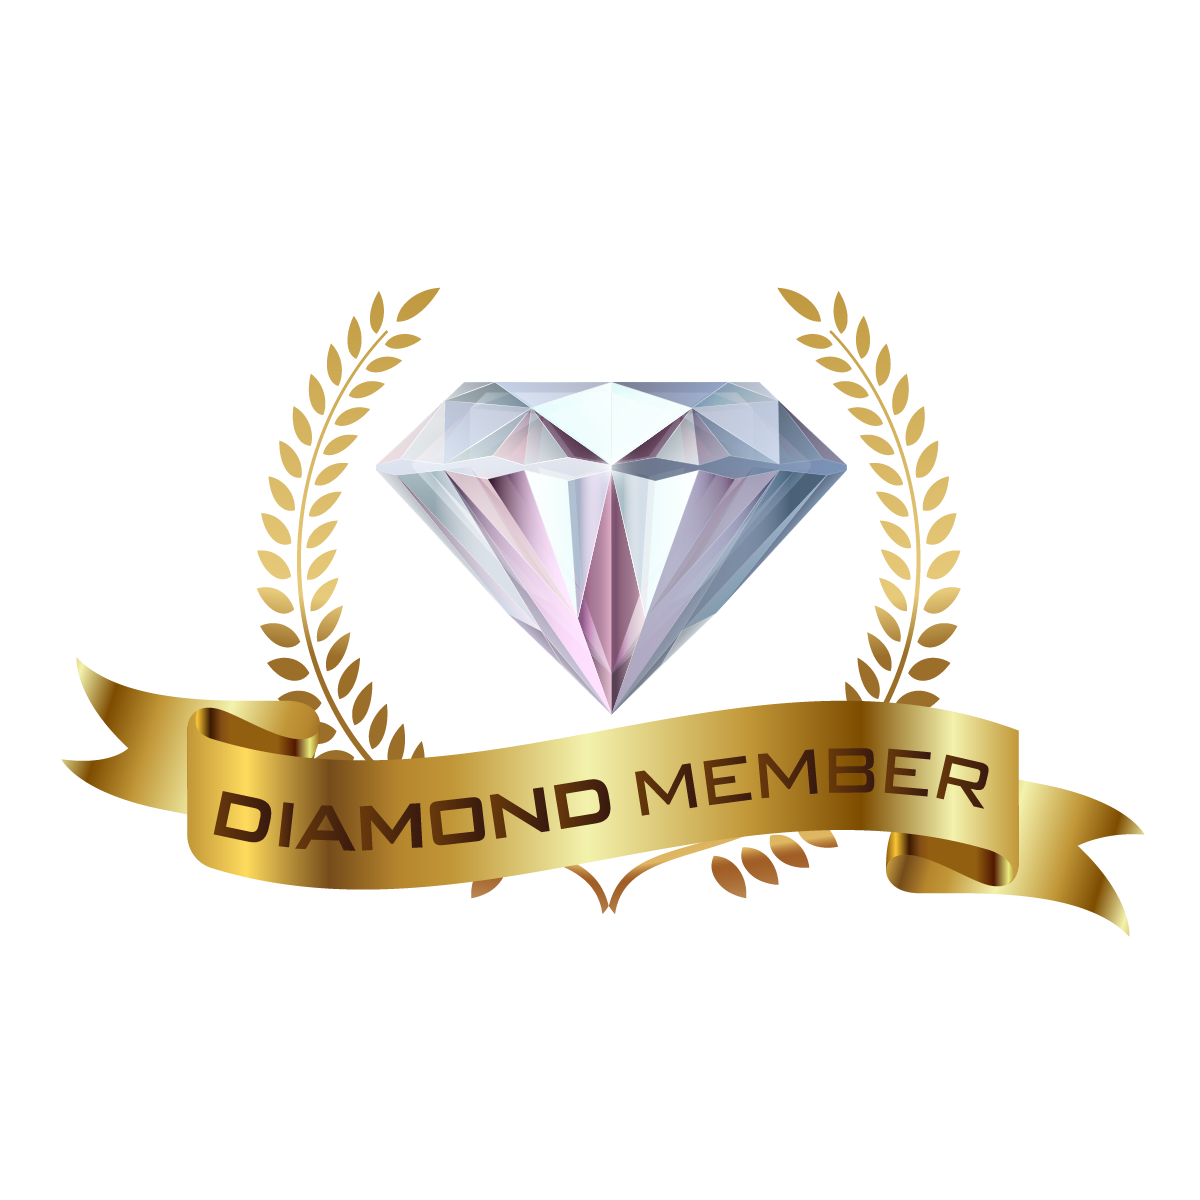 DIAMOND MEMBER